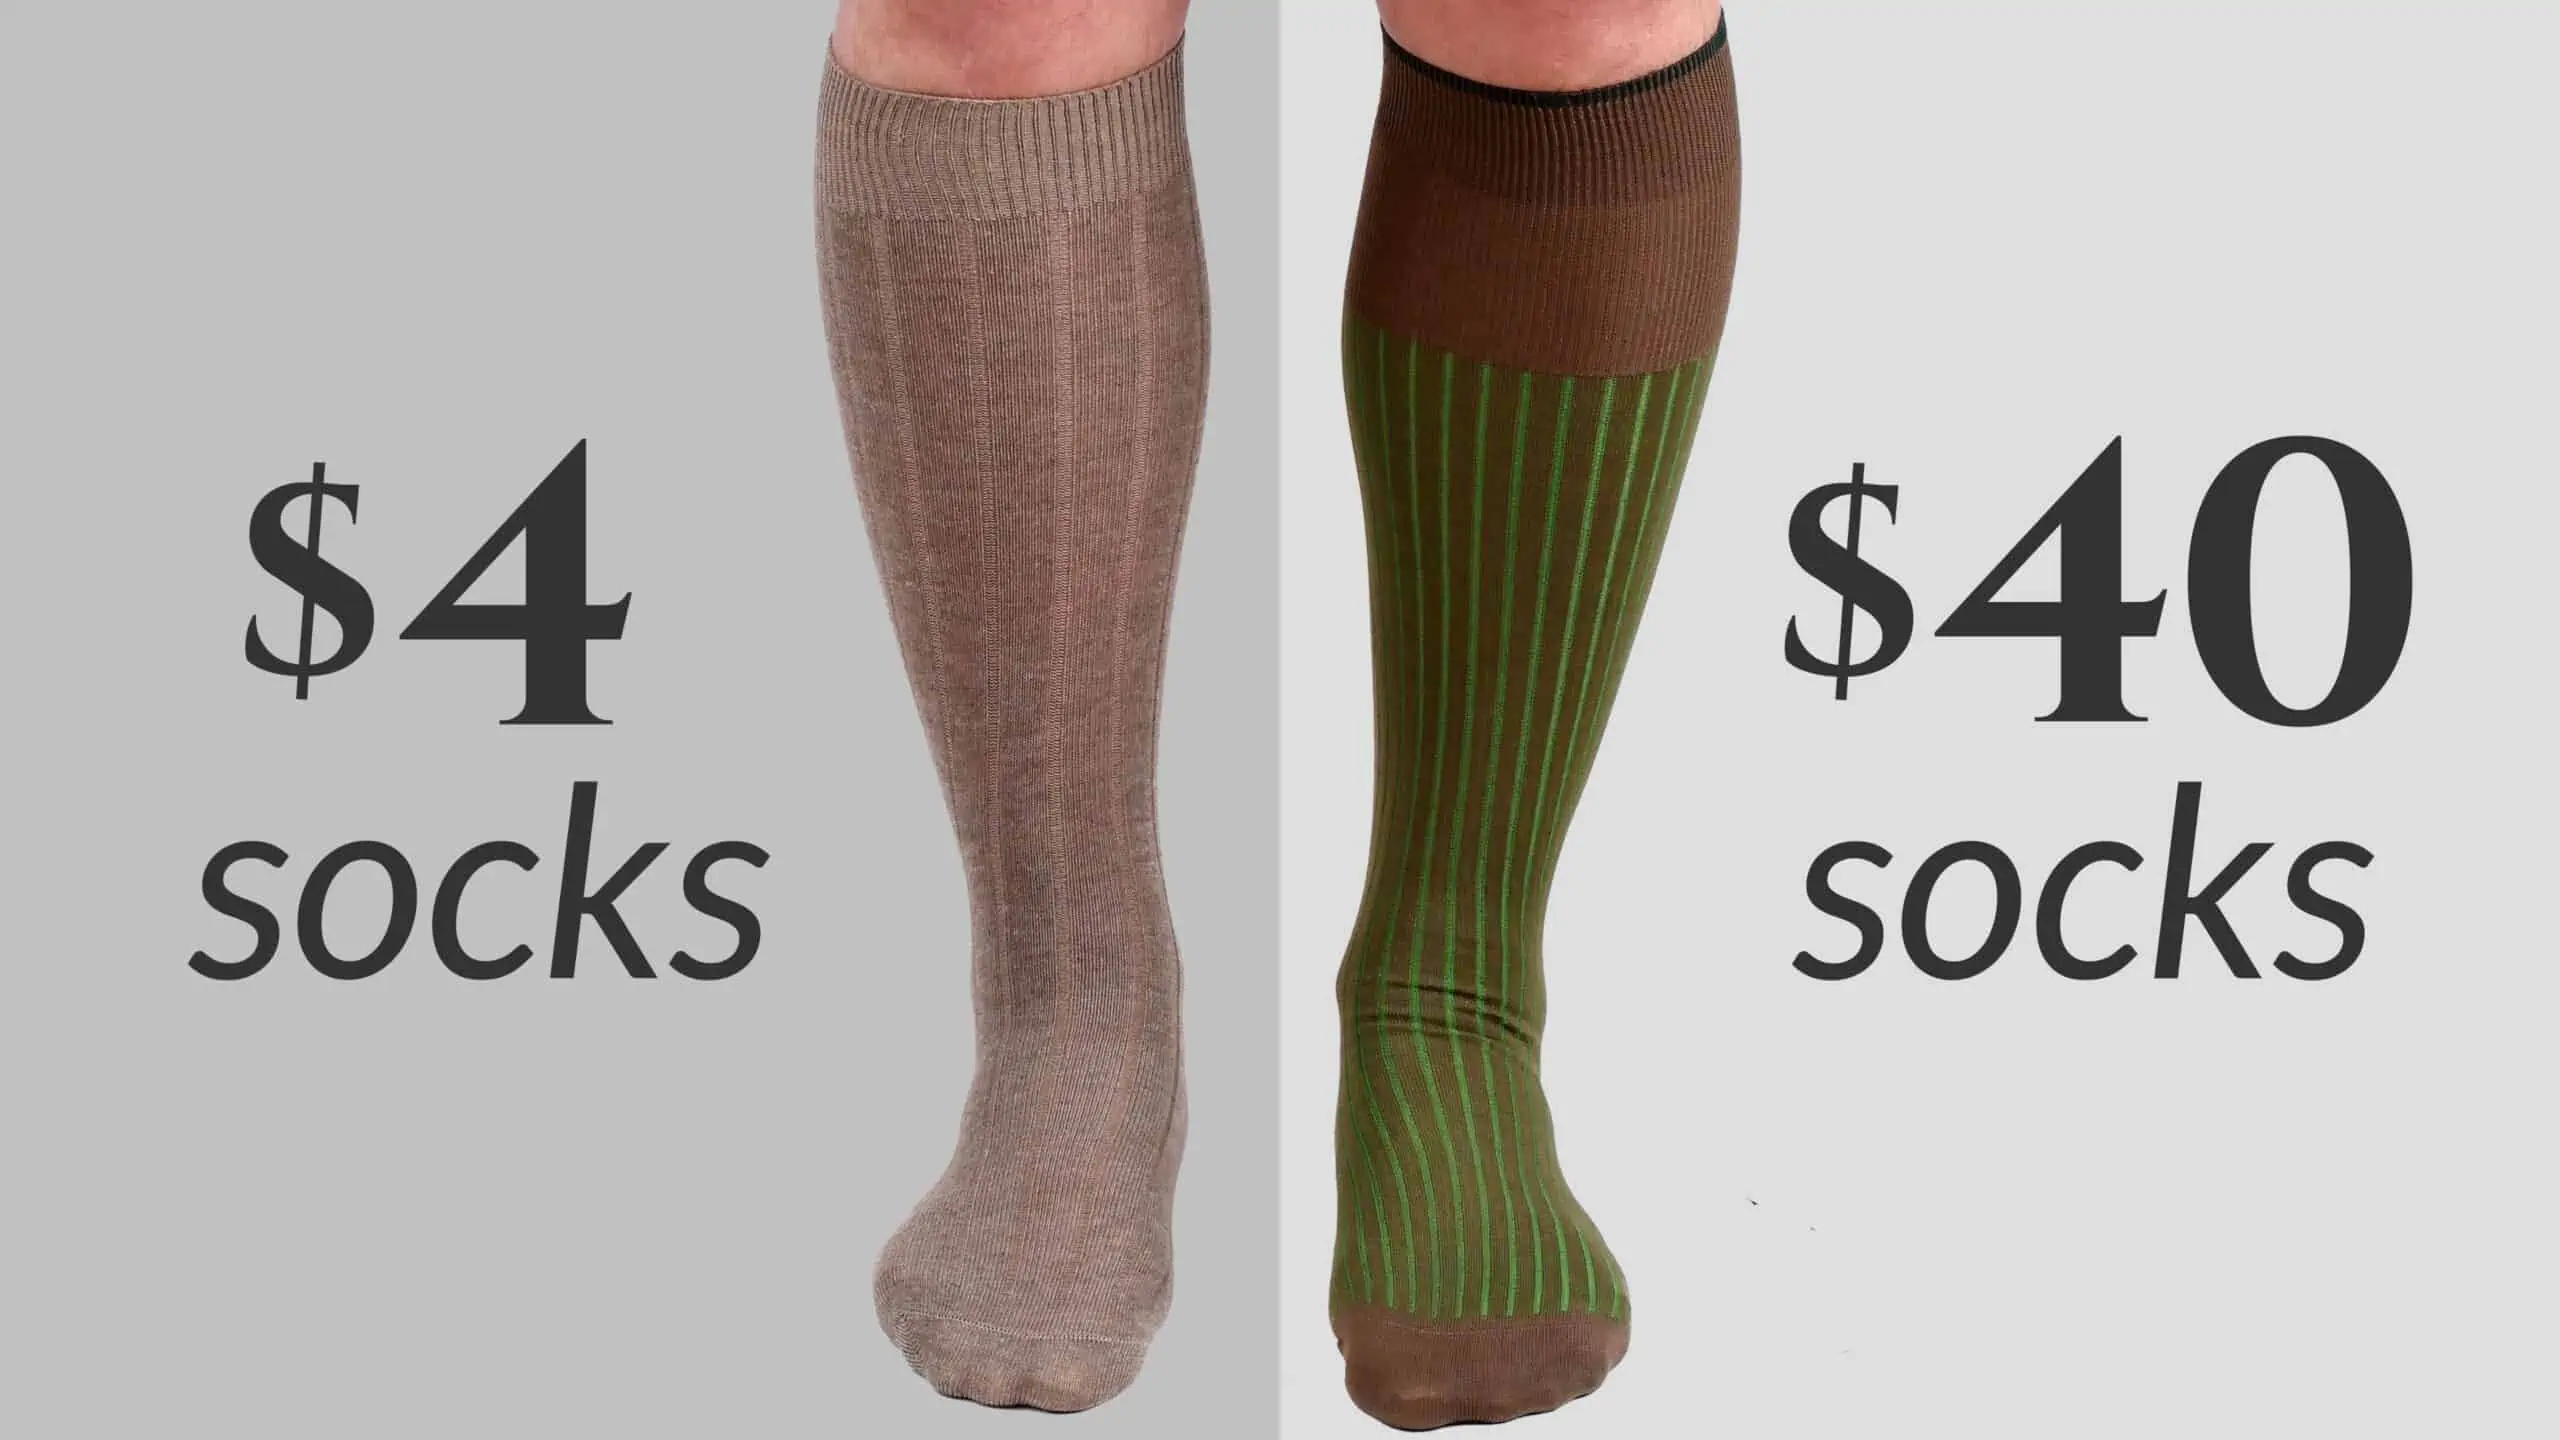 4 vs 40 socks 3840x2160 scaled